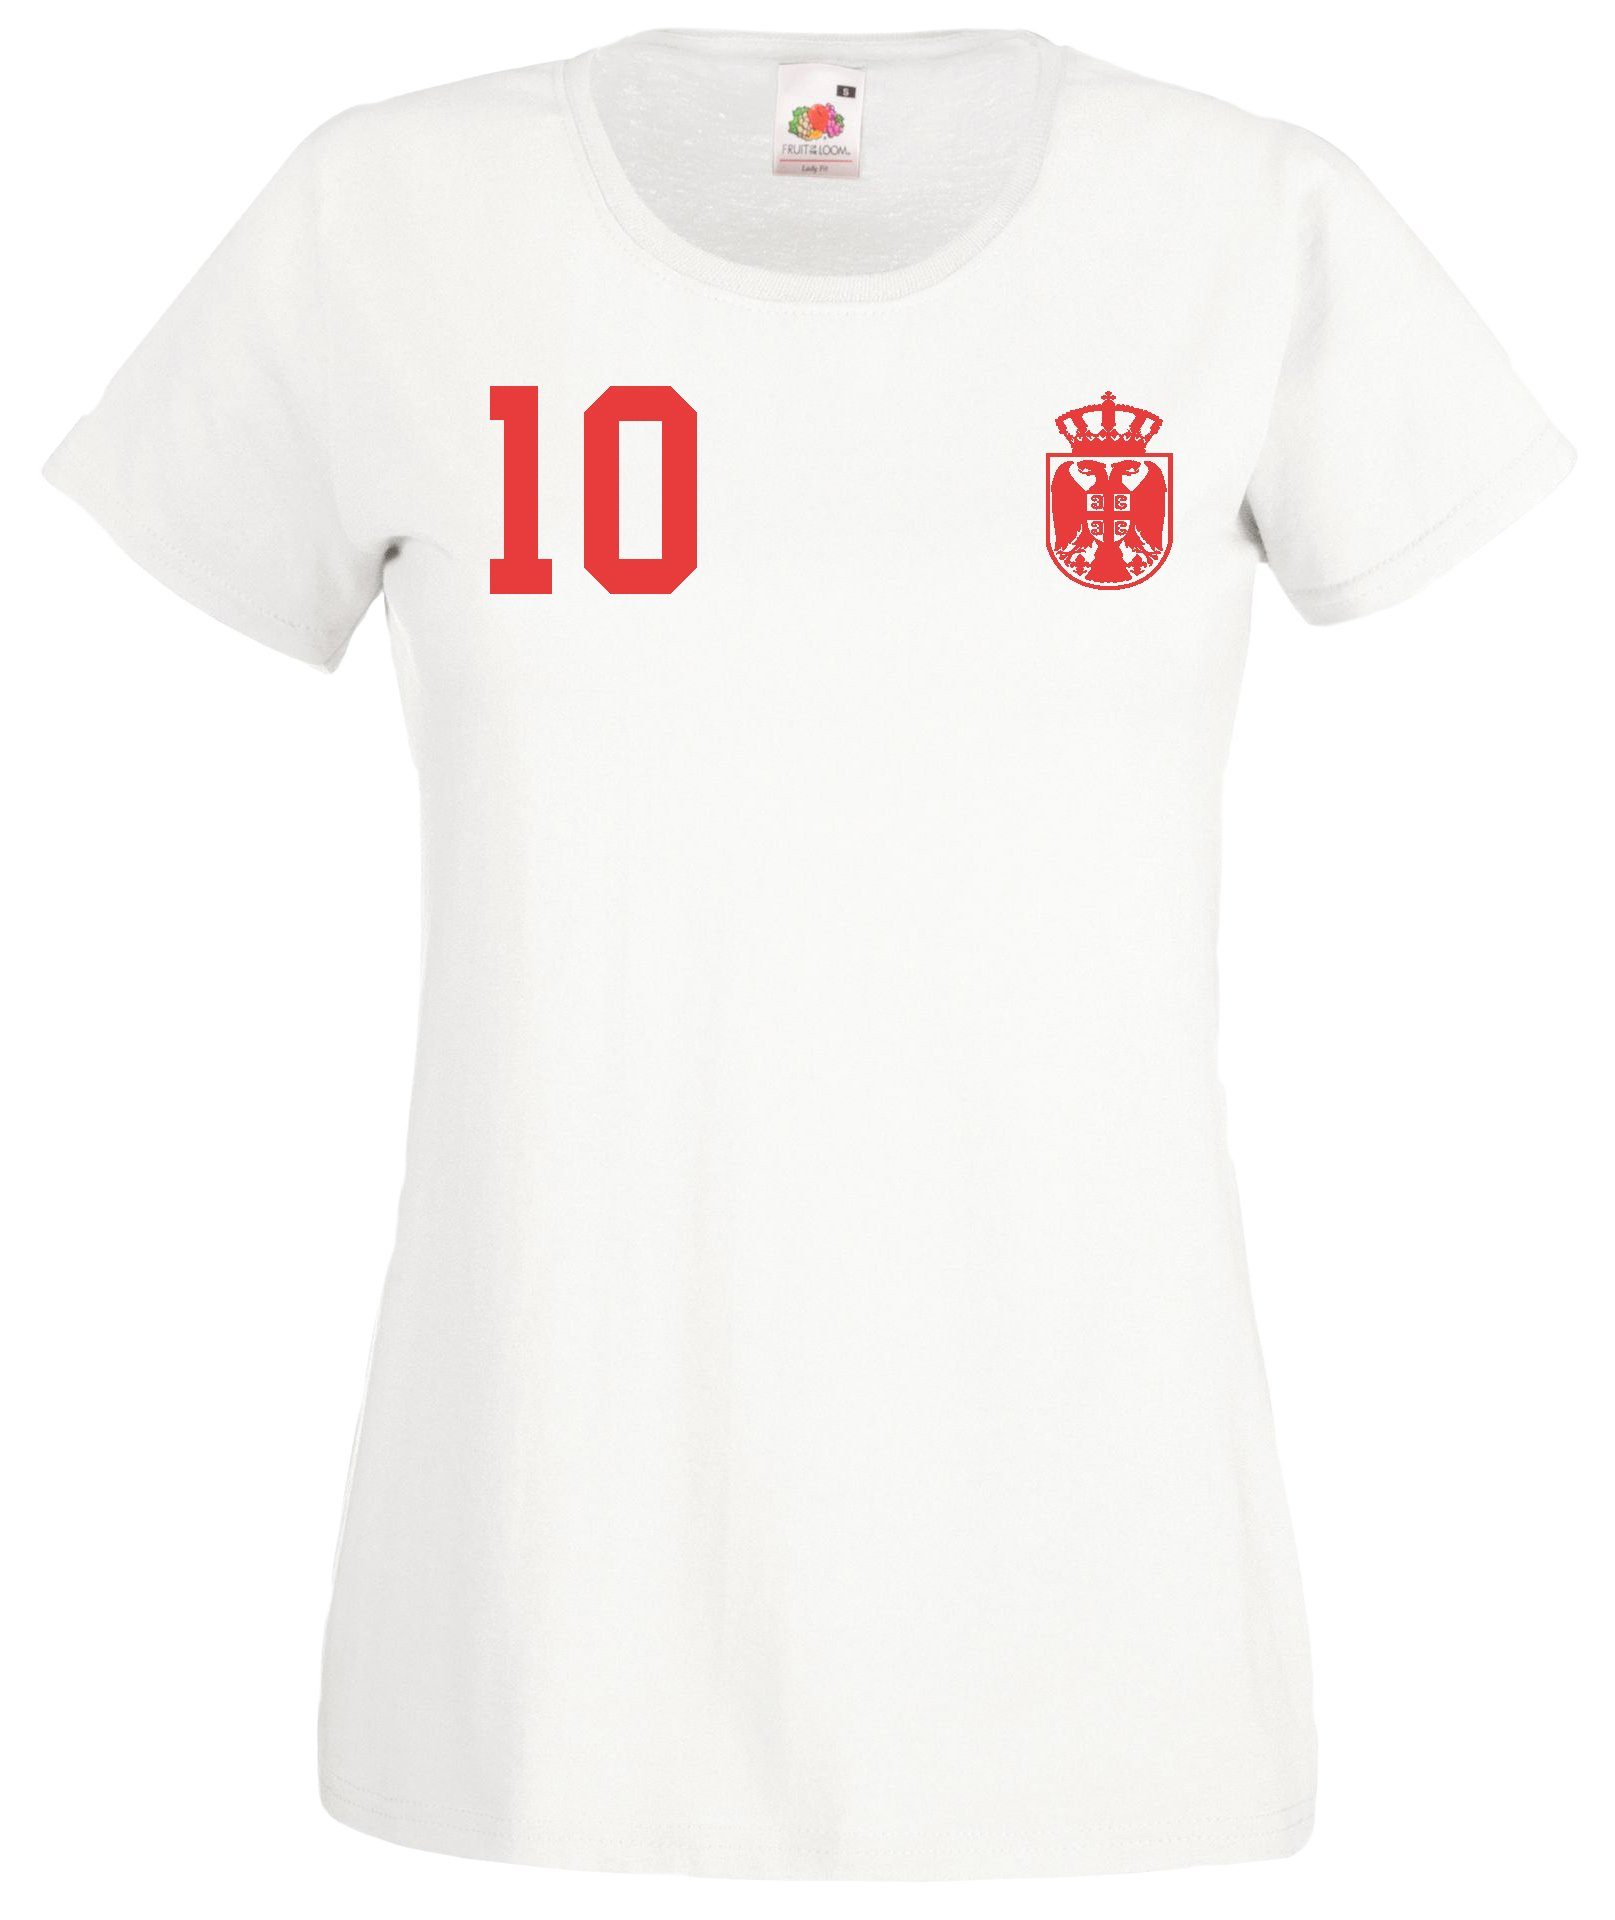 Motiv T-Shirt Look Designz im Weiß Damen Youth Fußball Trikot Serbien trendigem mit T-Shirt